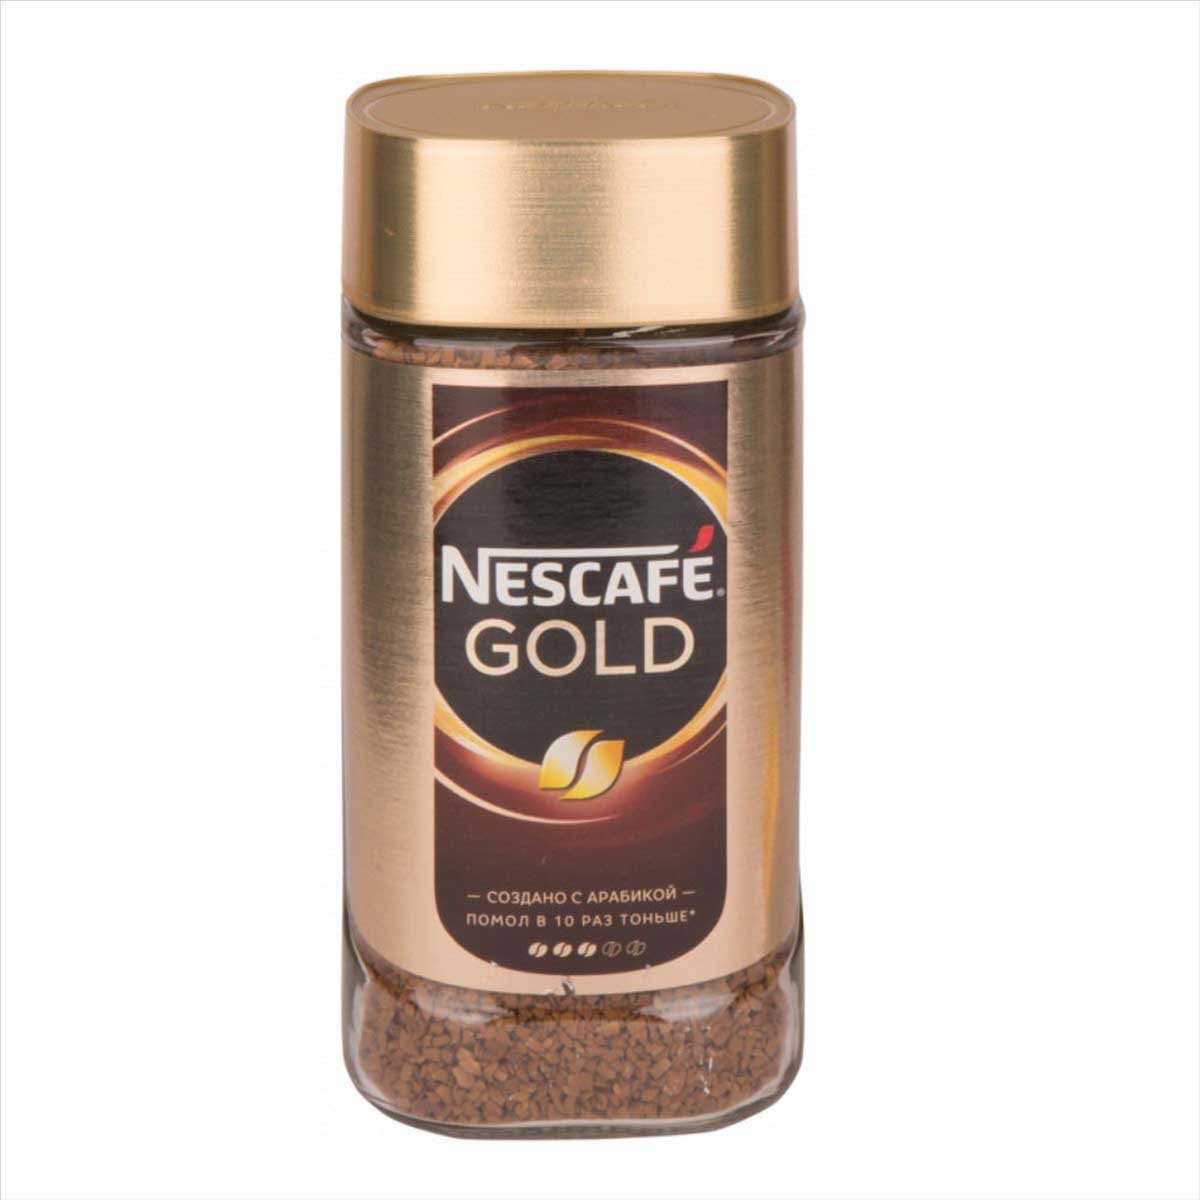 Мелющий кофе нескафе. Кофе Нескафе Голд 190г ст/б. Кофе Нескафе Голд 95 ст/б. Кофе растворимый Нескафе Голд 190г. Кофе "Nescafe" Голд 190г.